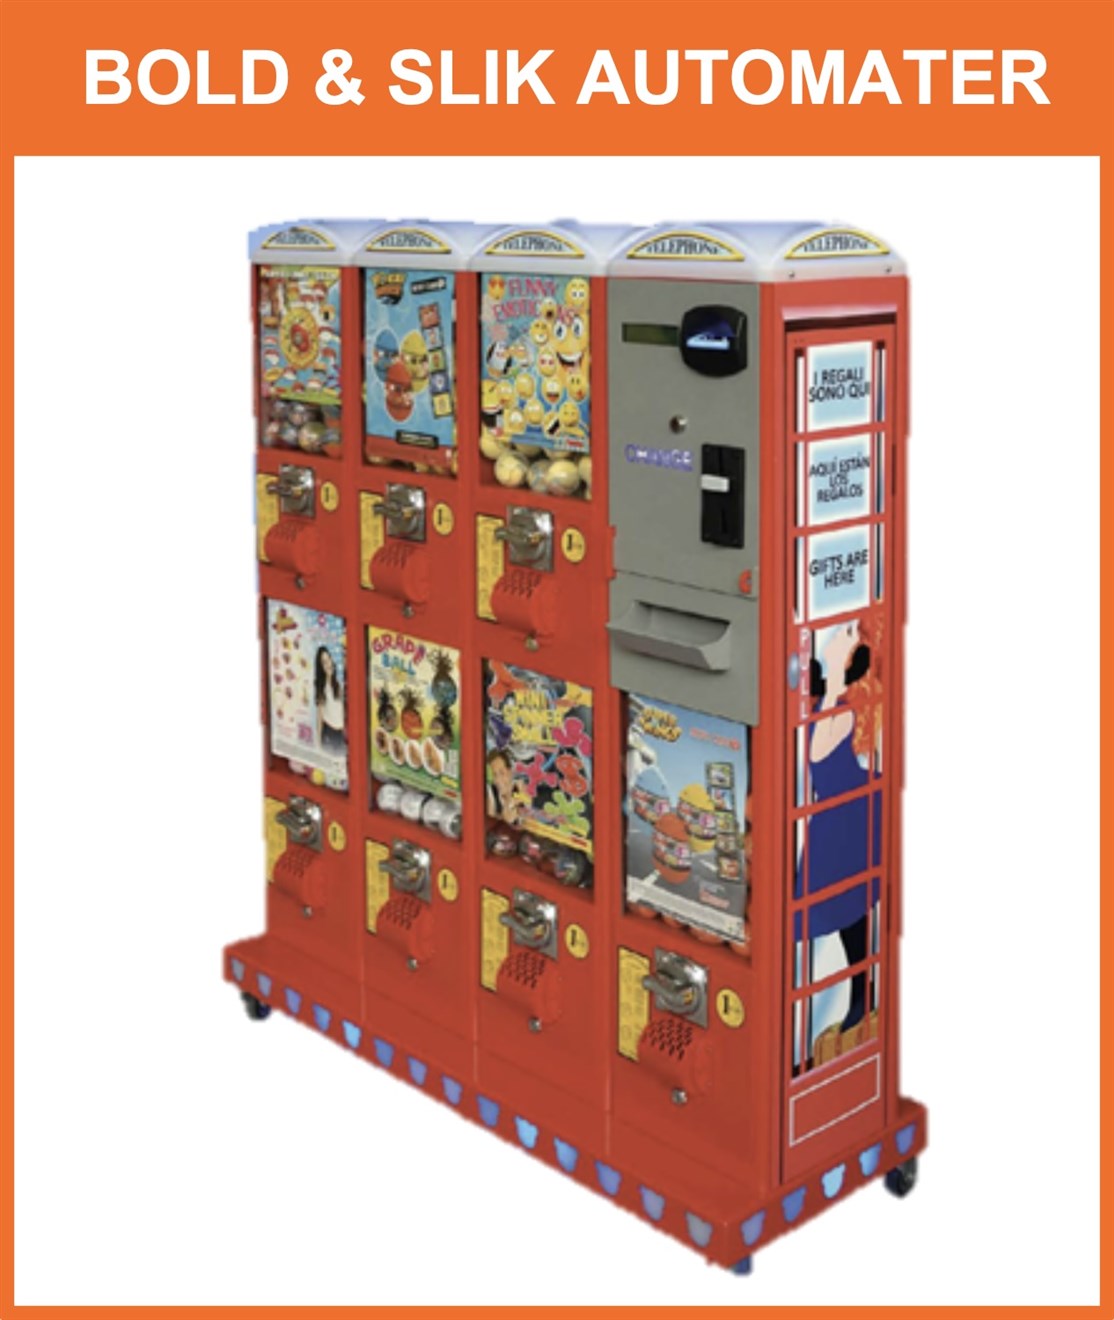 Salg af automater til bolde, slik & legetøj m.m.
- klik på billedet
*